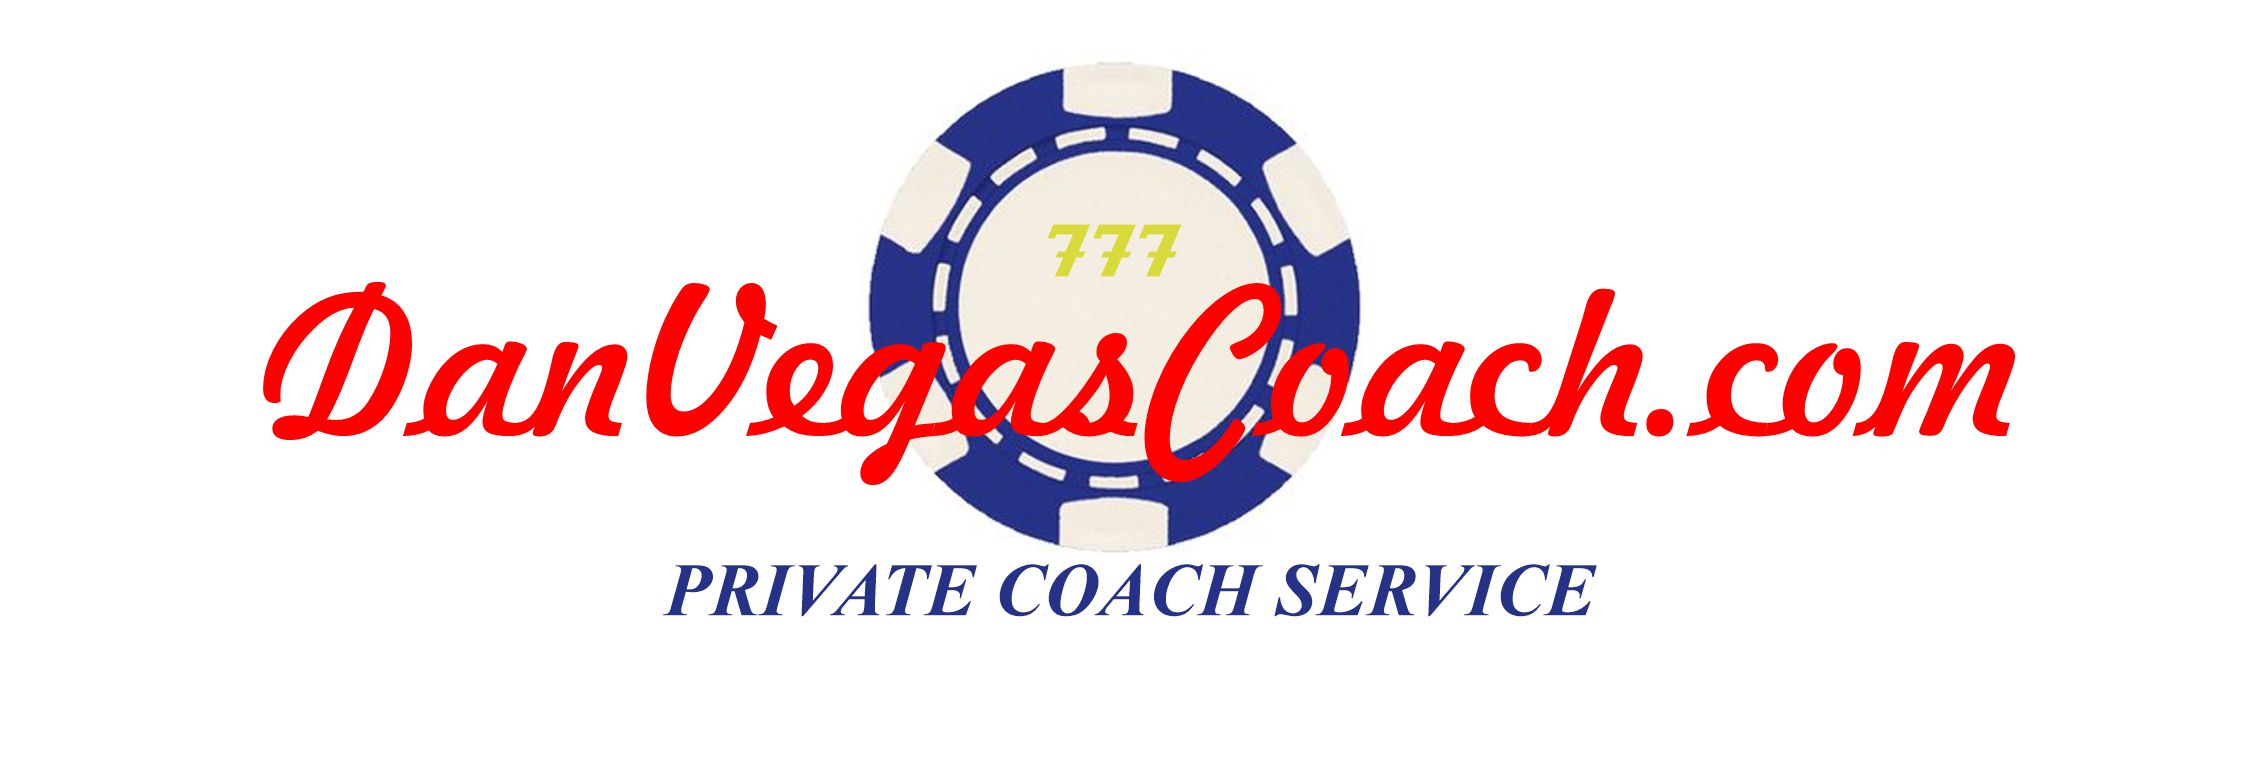 Dan Vegas Coach